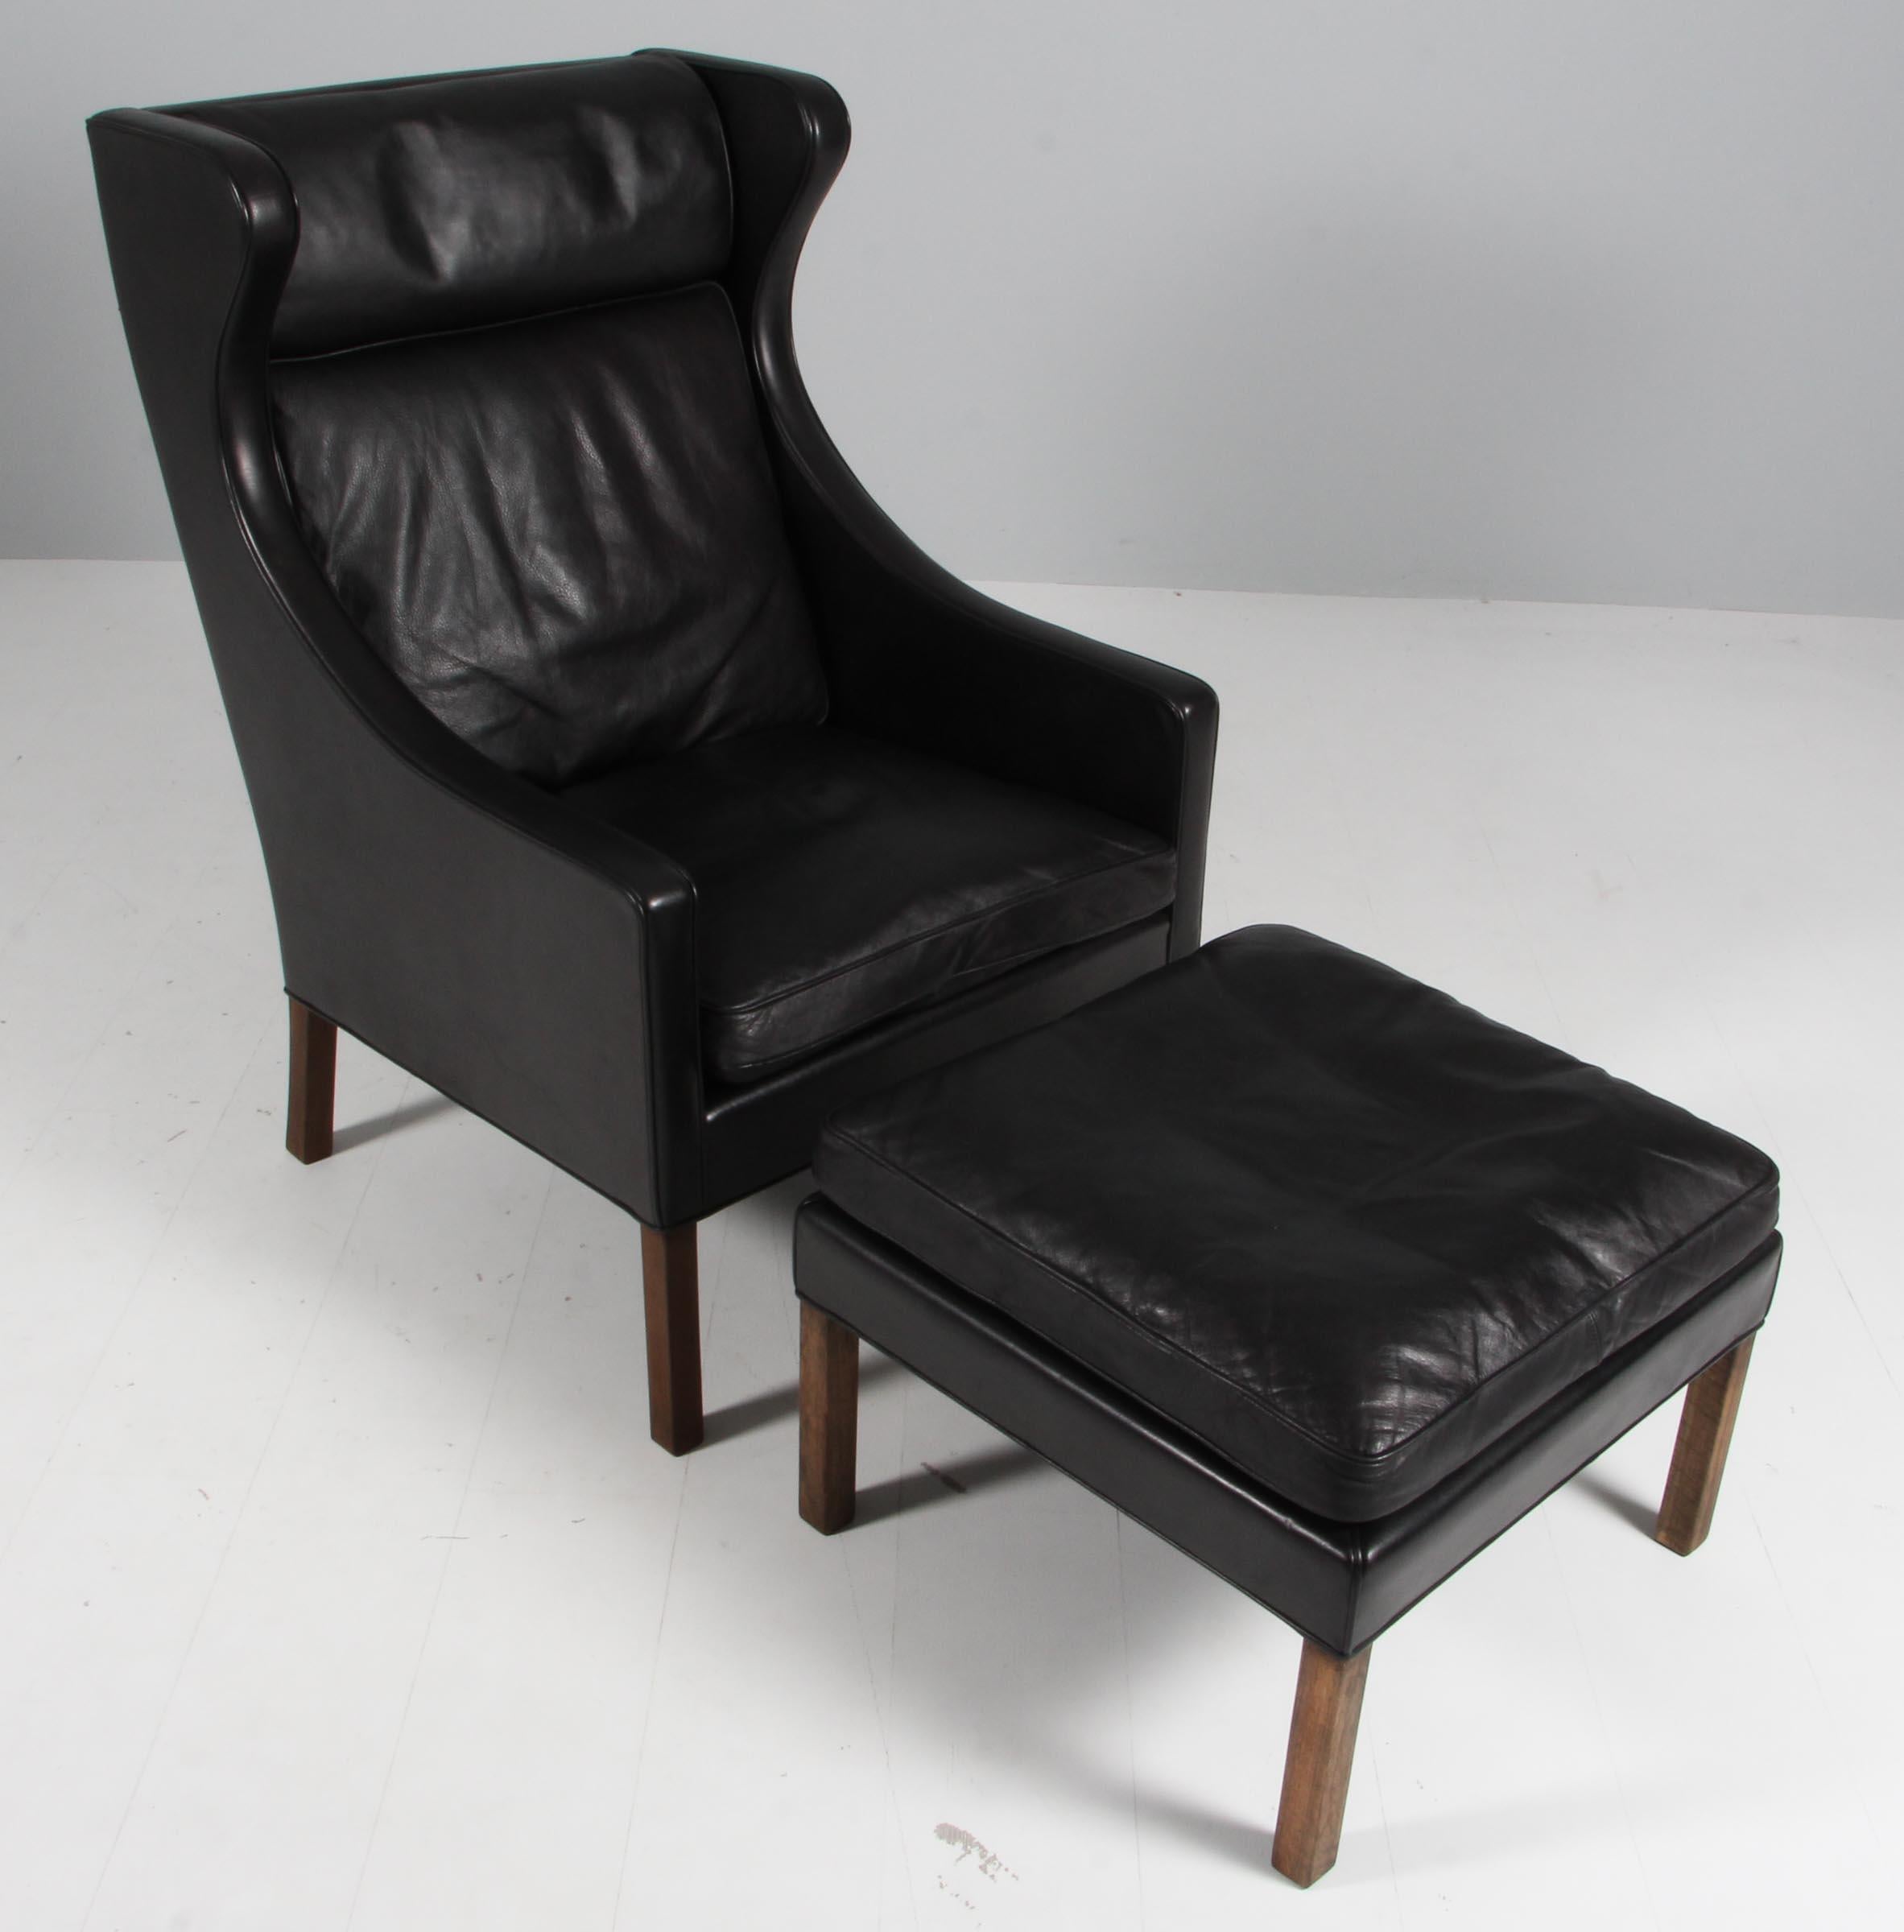 Chaise à oreilles et ottoman Børge Mogensen, originellement recouverts de cuir noir.

Pieds en bois teinté.

Modèles 2202 et 2204, fabriqués par Fredericia Furniture.